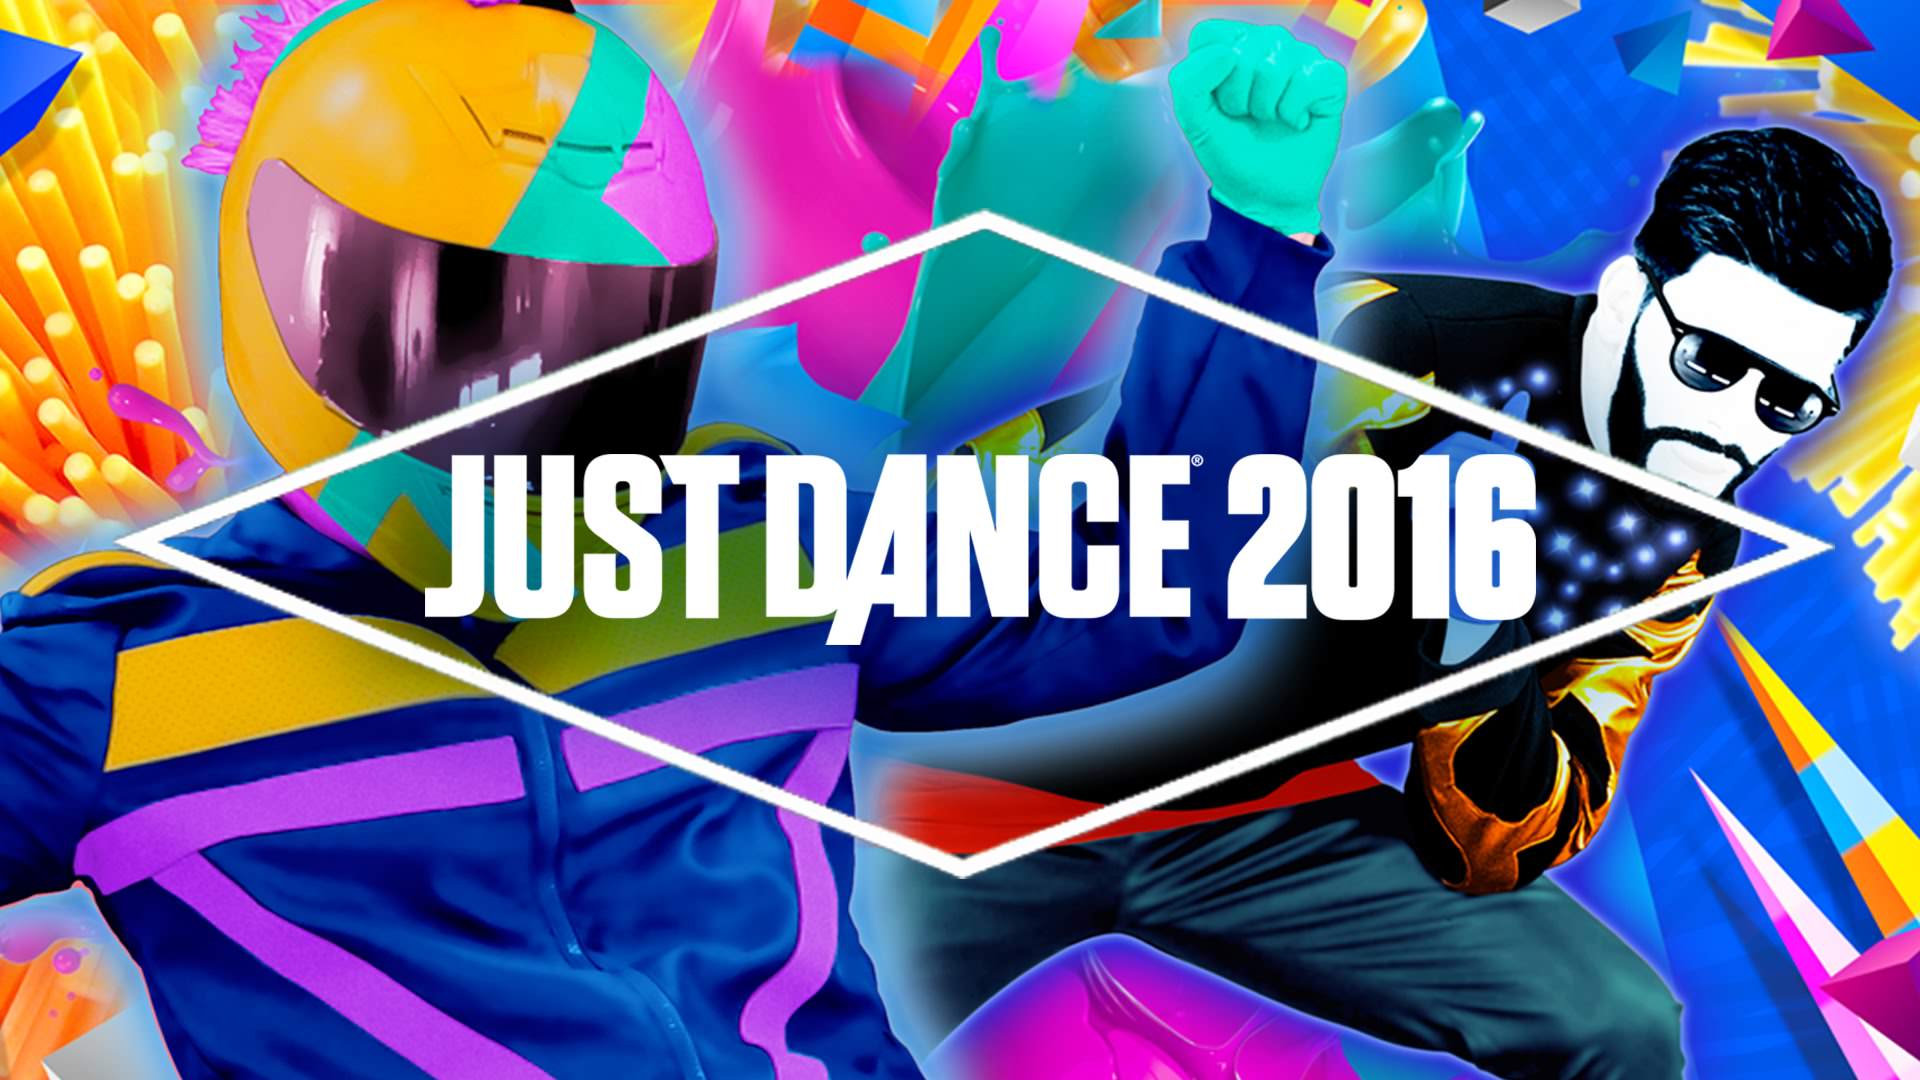 Descargas digitales en la eShop y ofertas. ¡Demo de ‘Just Dance 2016’ incluida! (30/7/15, Europa)